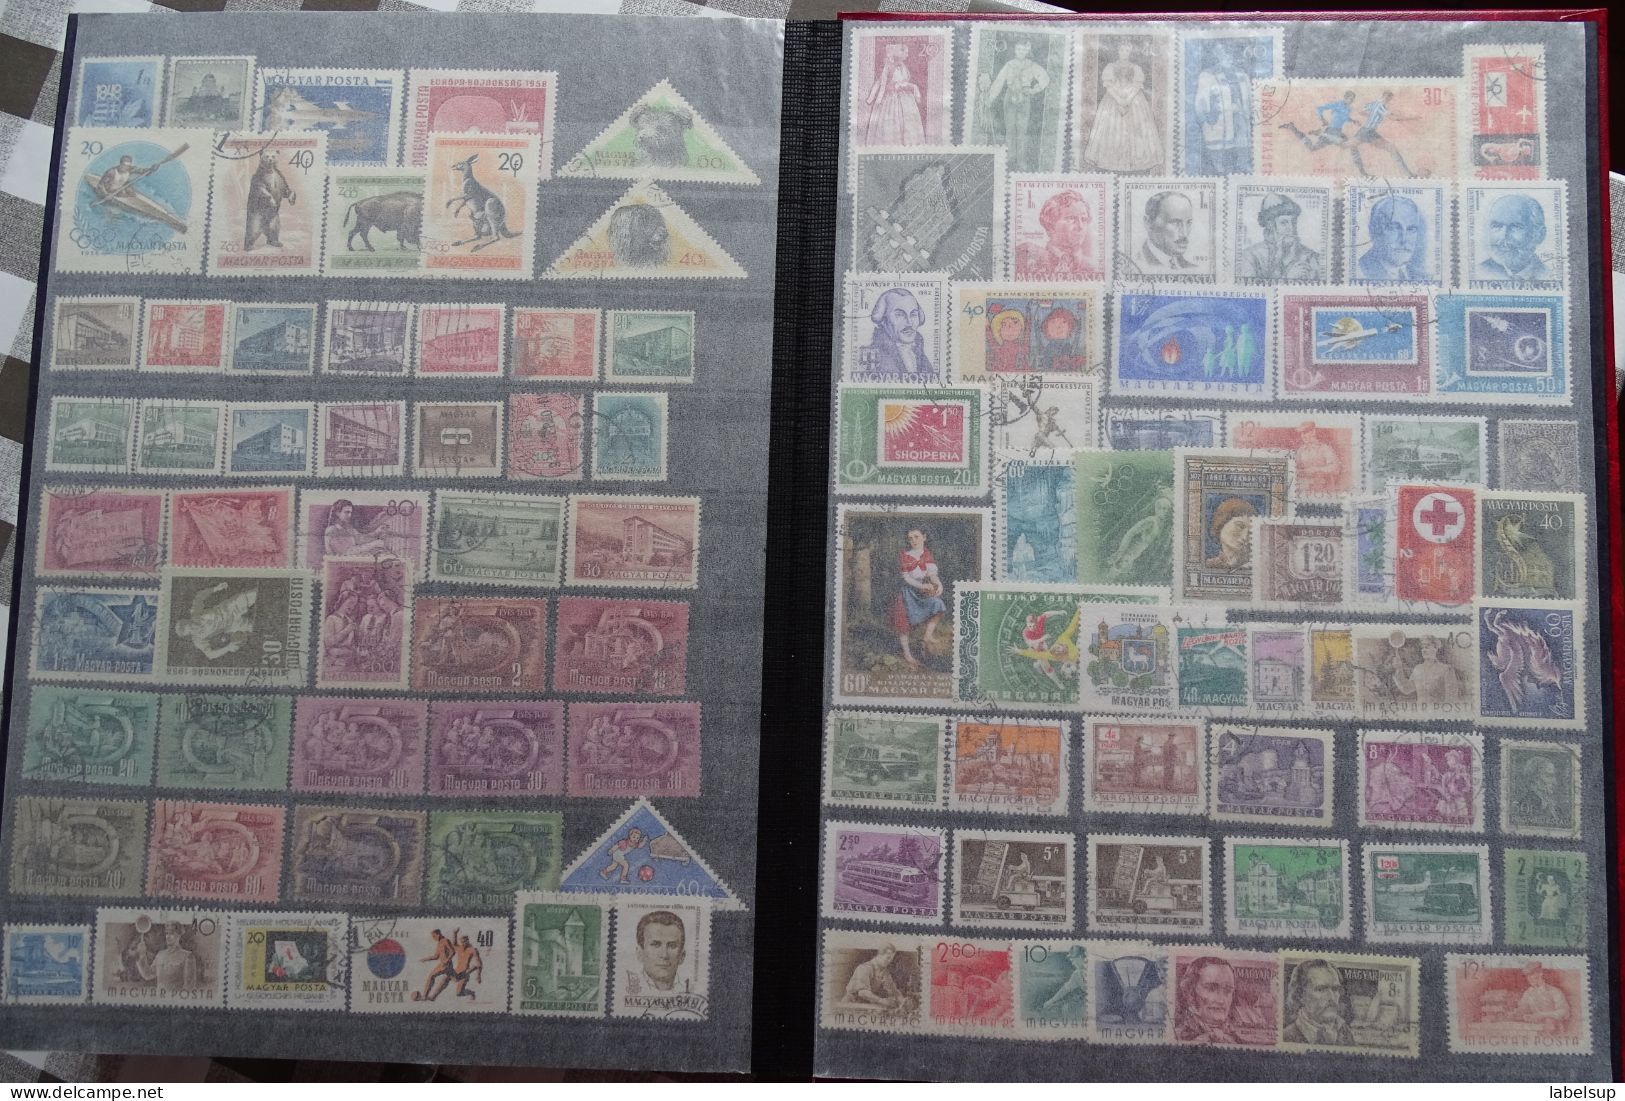 album de timbres de Hongrie, à voir les photos